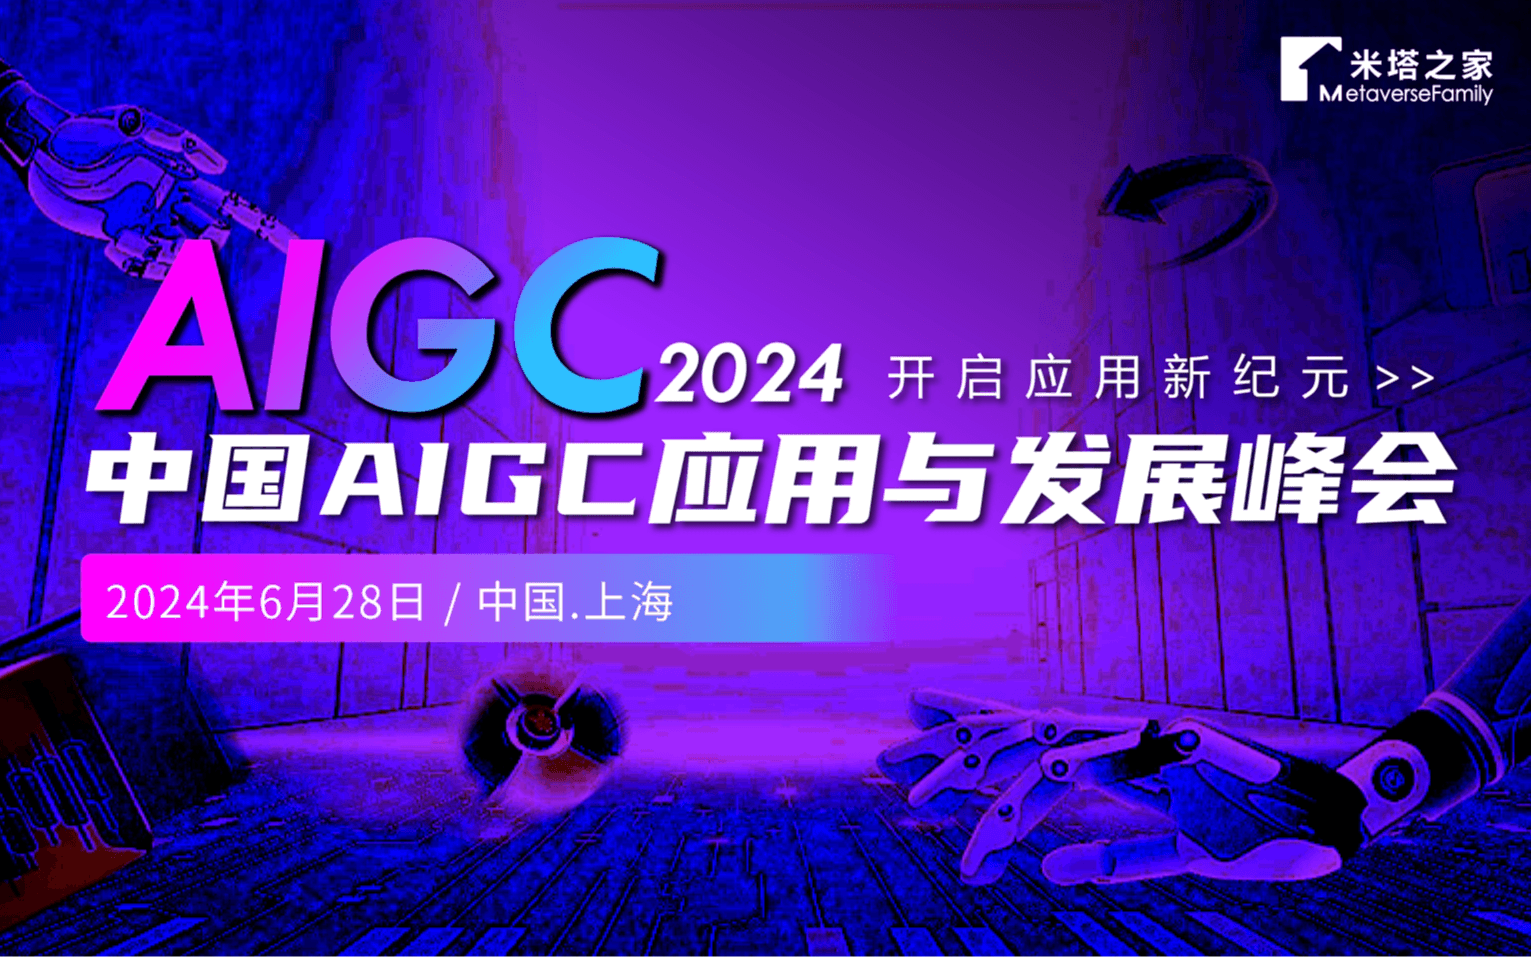 2024中国AIGC应用与发展峰会